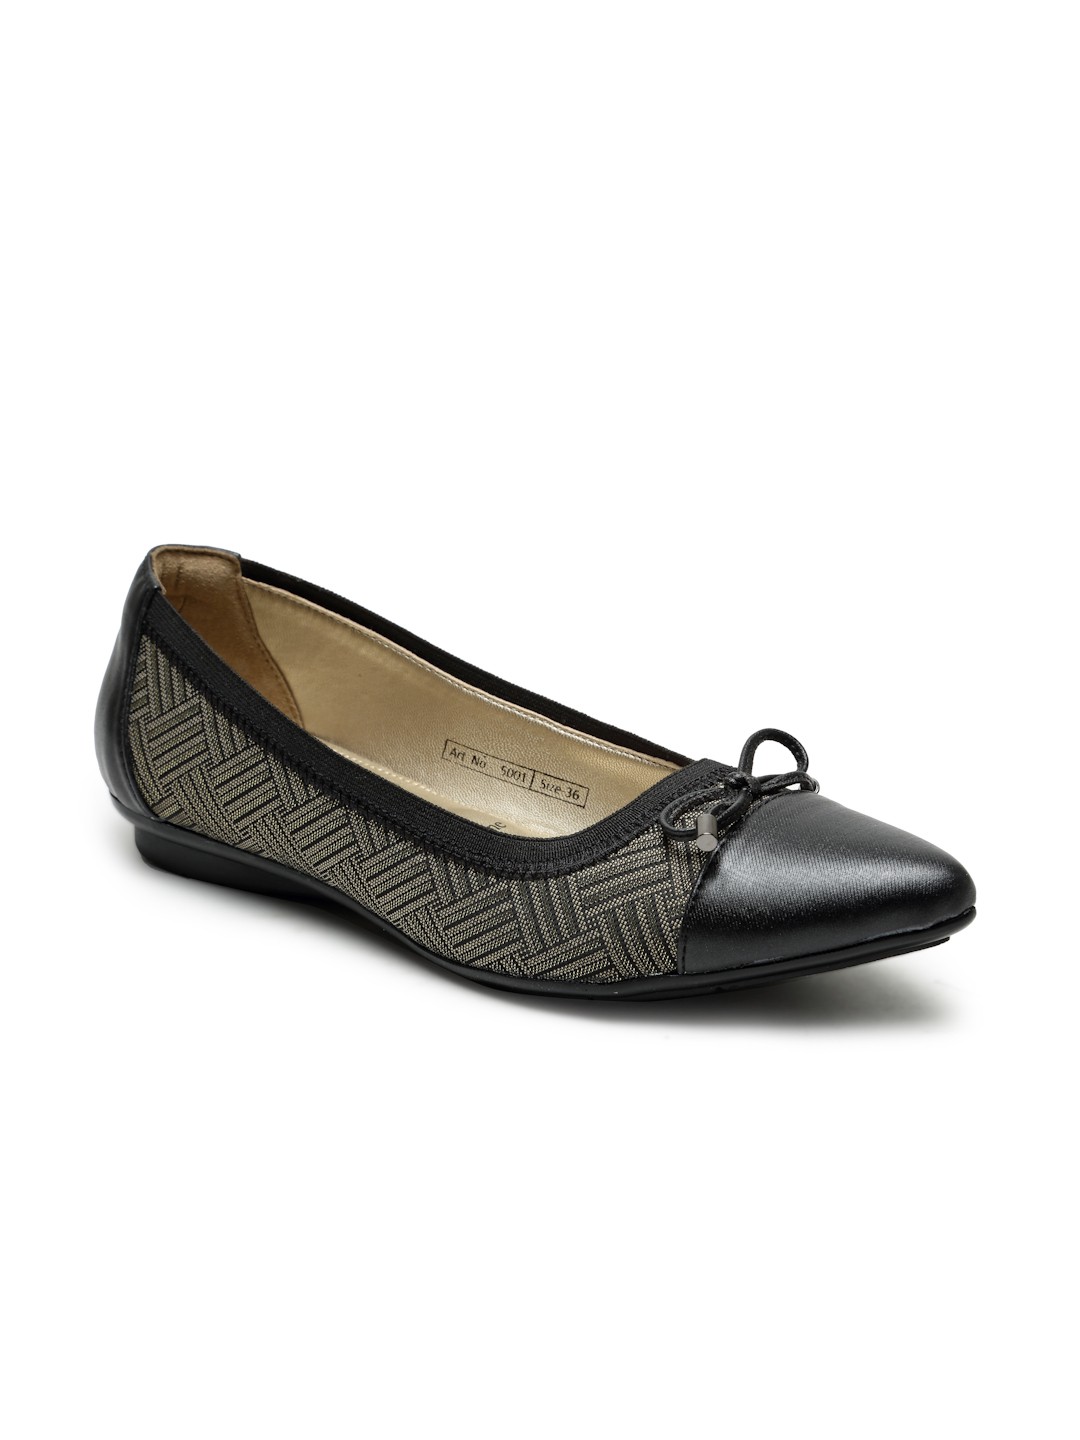 Buy Von Wellx Germany Comfort Women's Black Casual Shoes Lisa Online in Varanasi